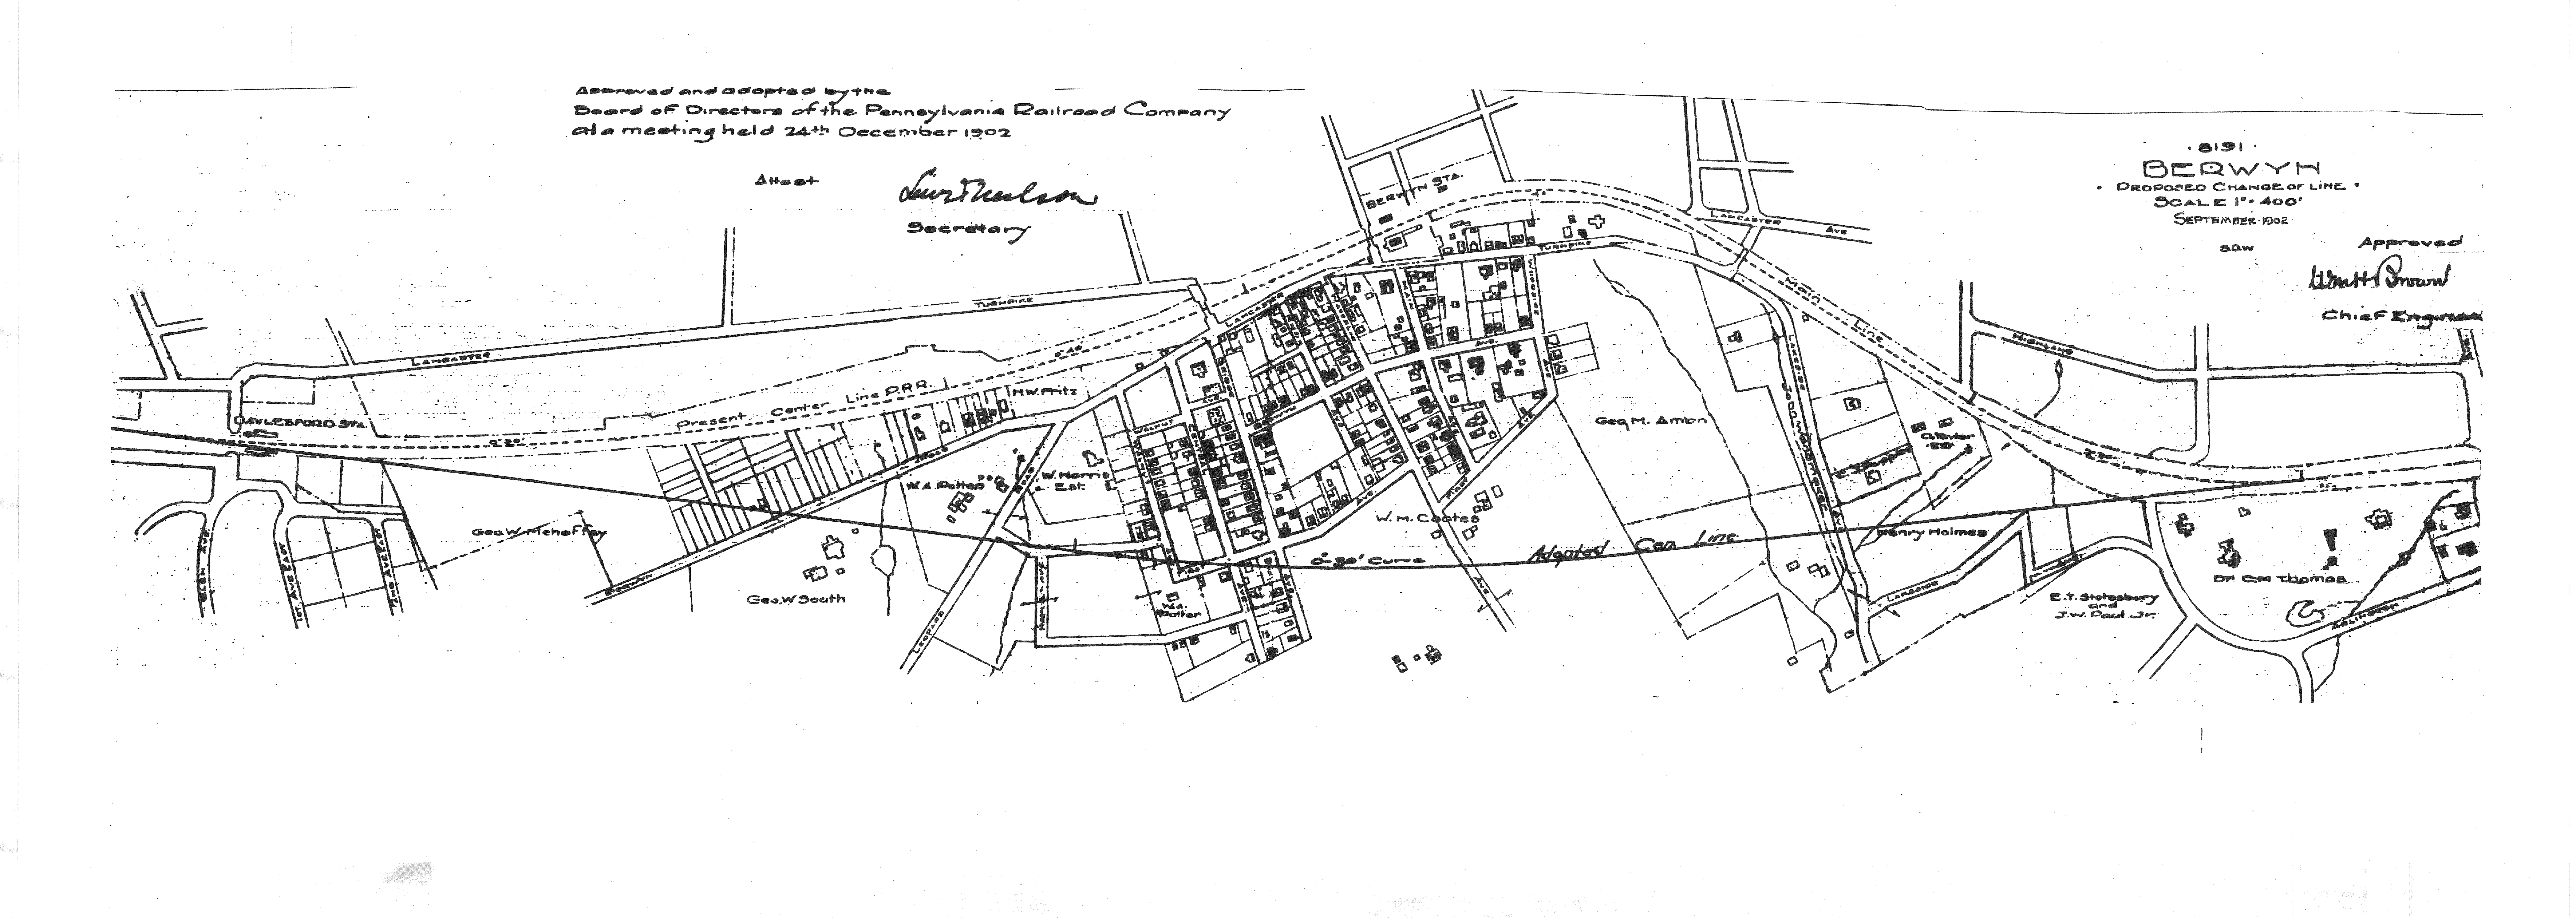 1902 plan